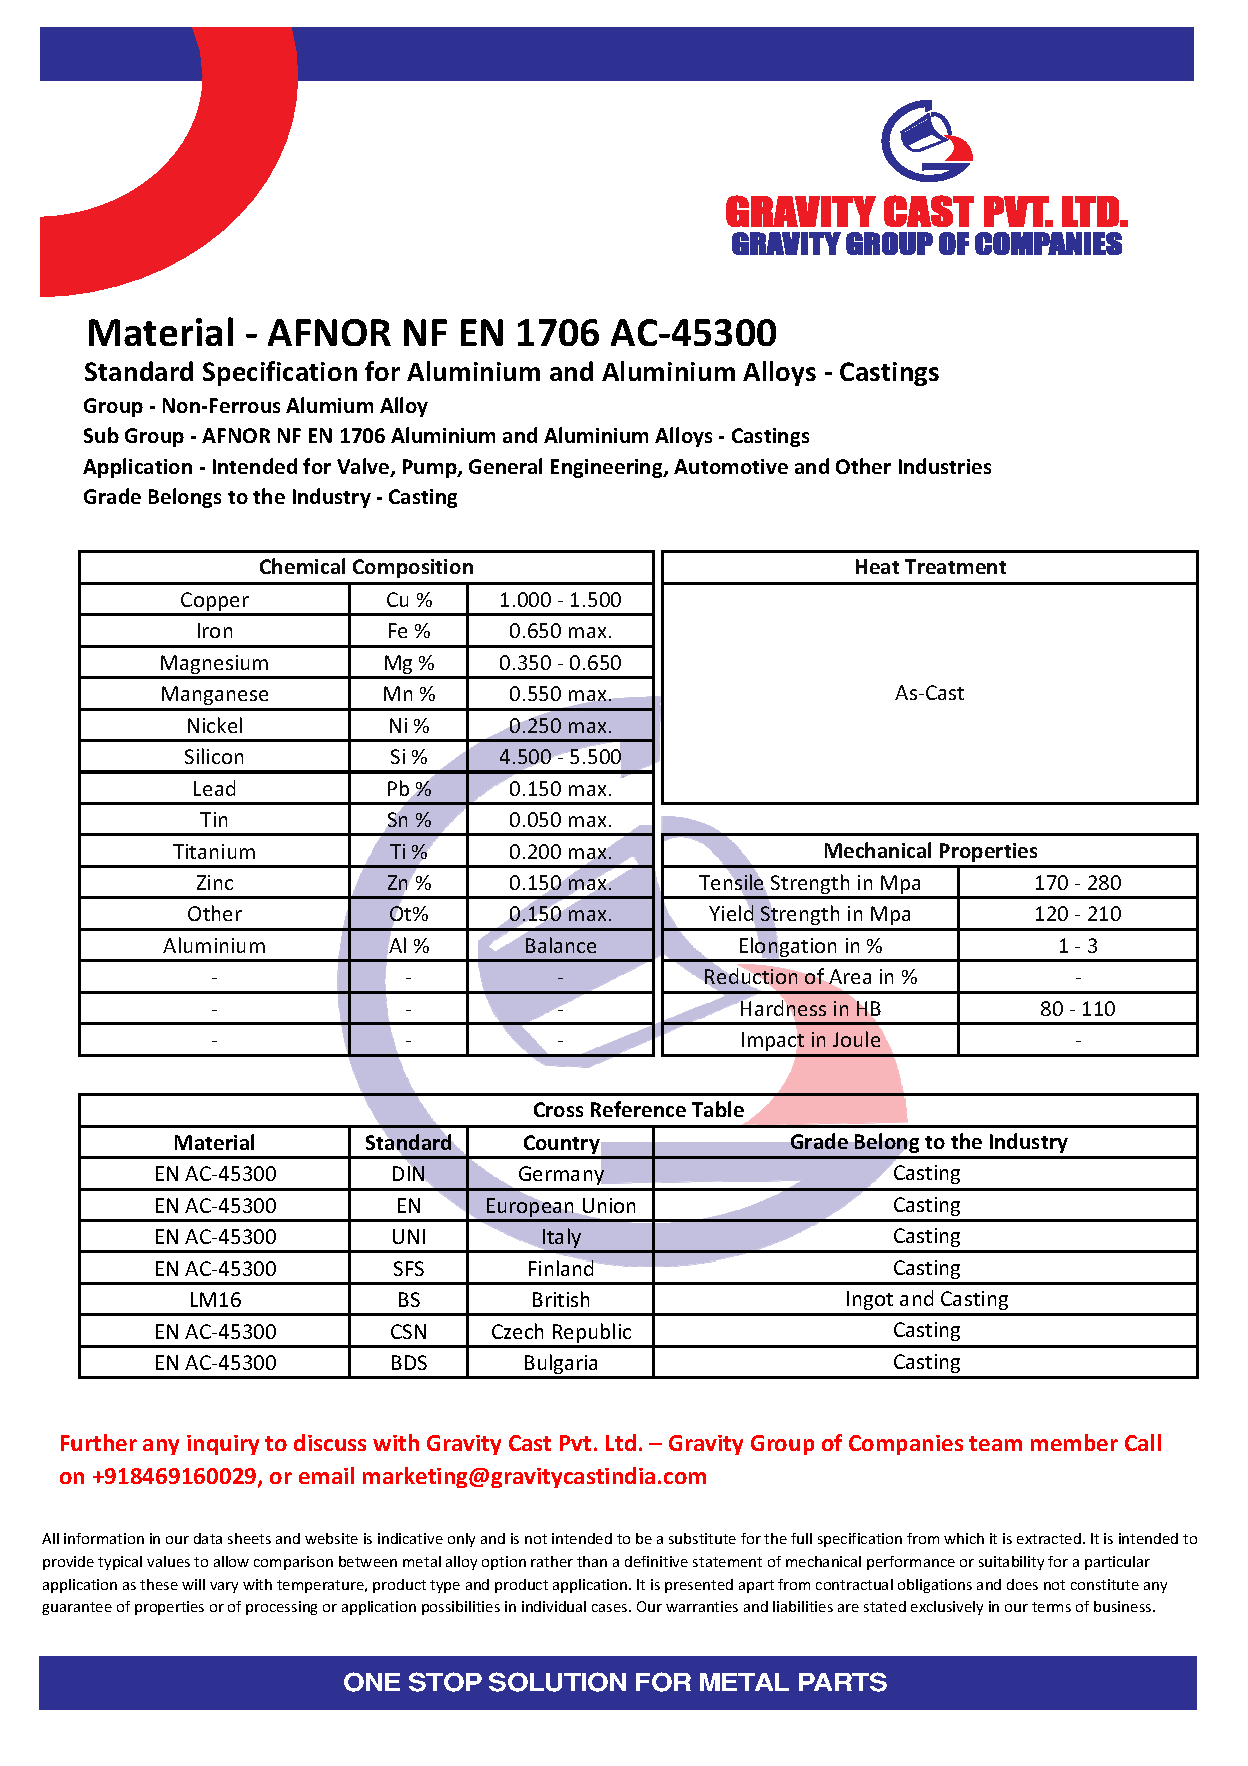 AFNOR NF EN 1706 AC-45300.pdf